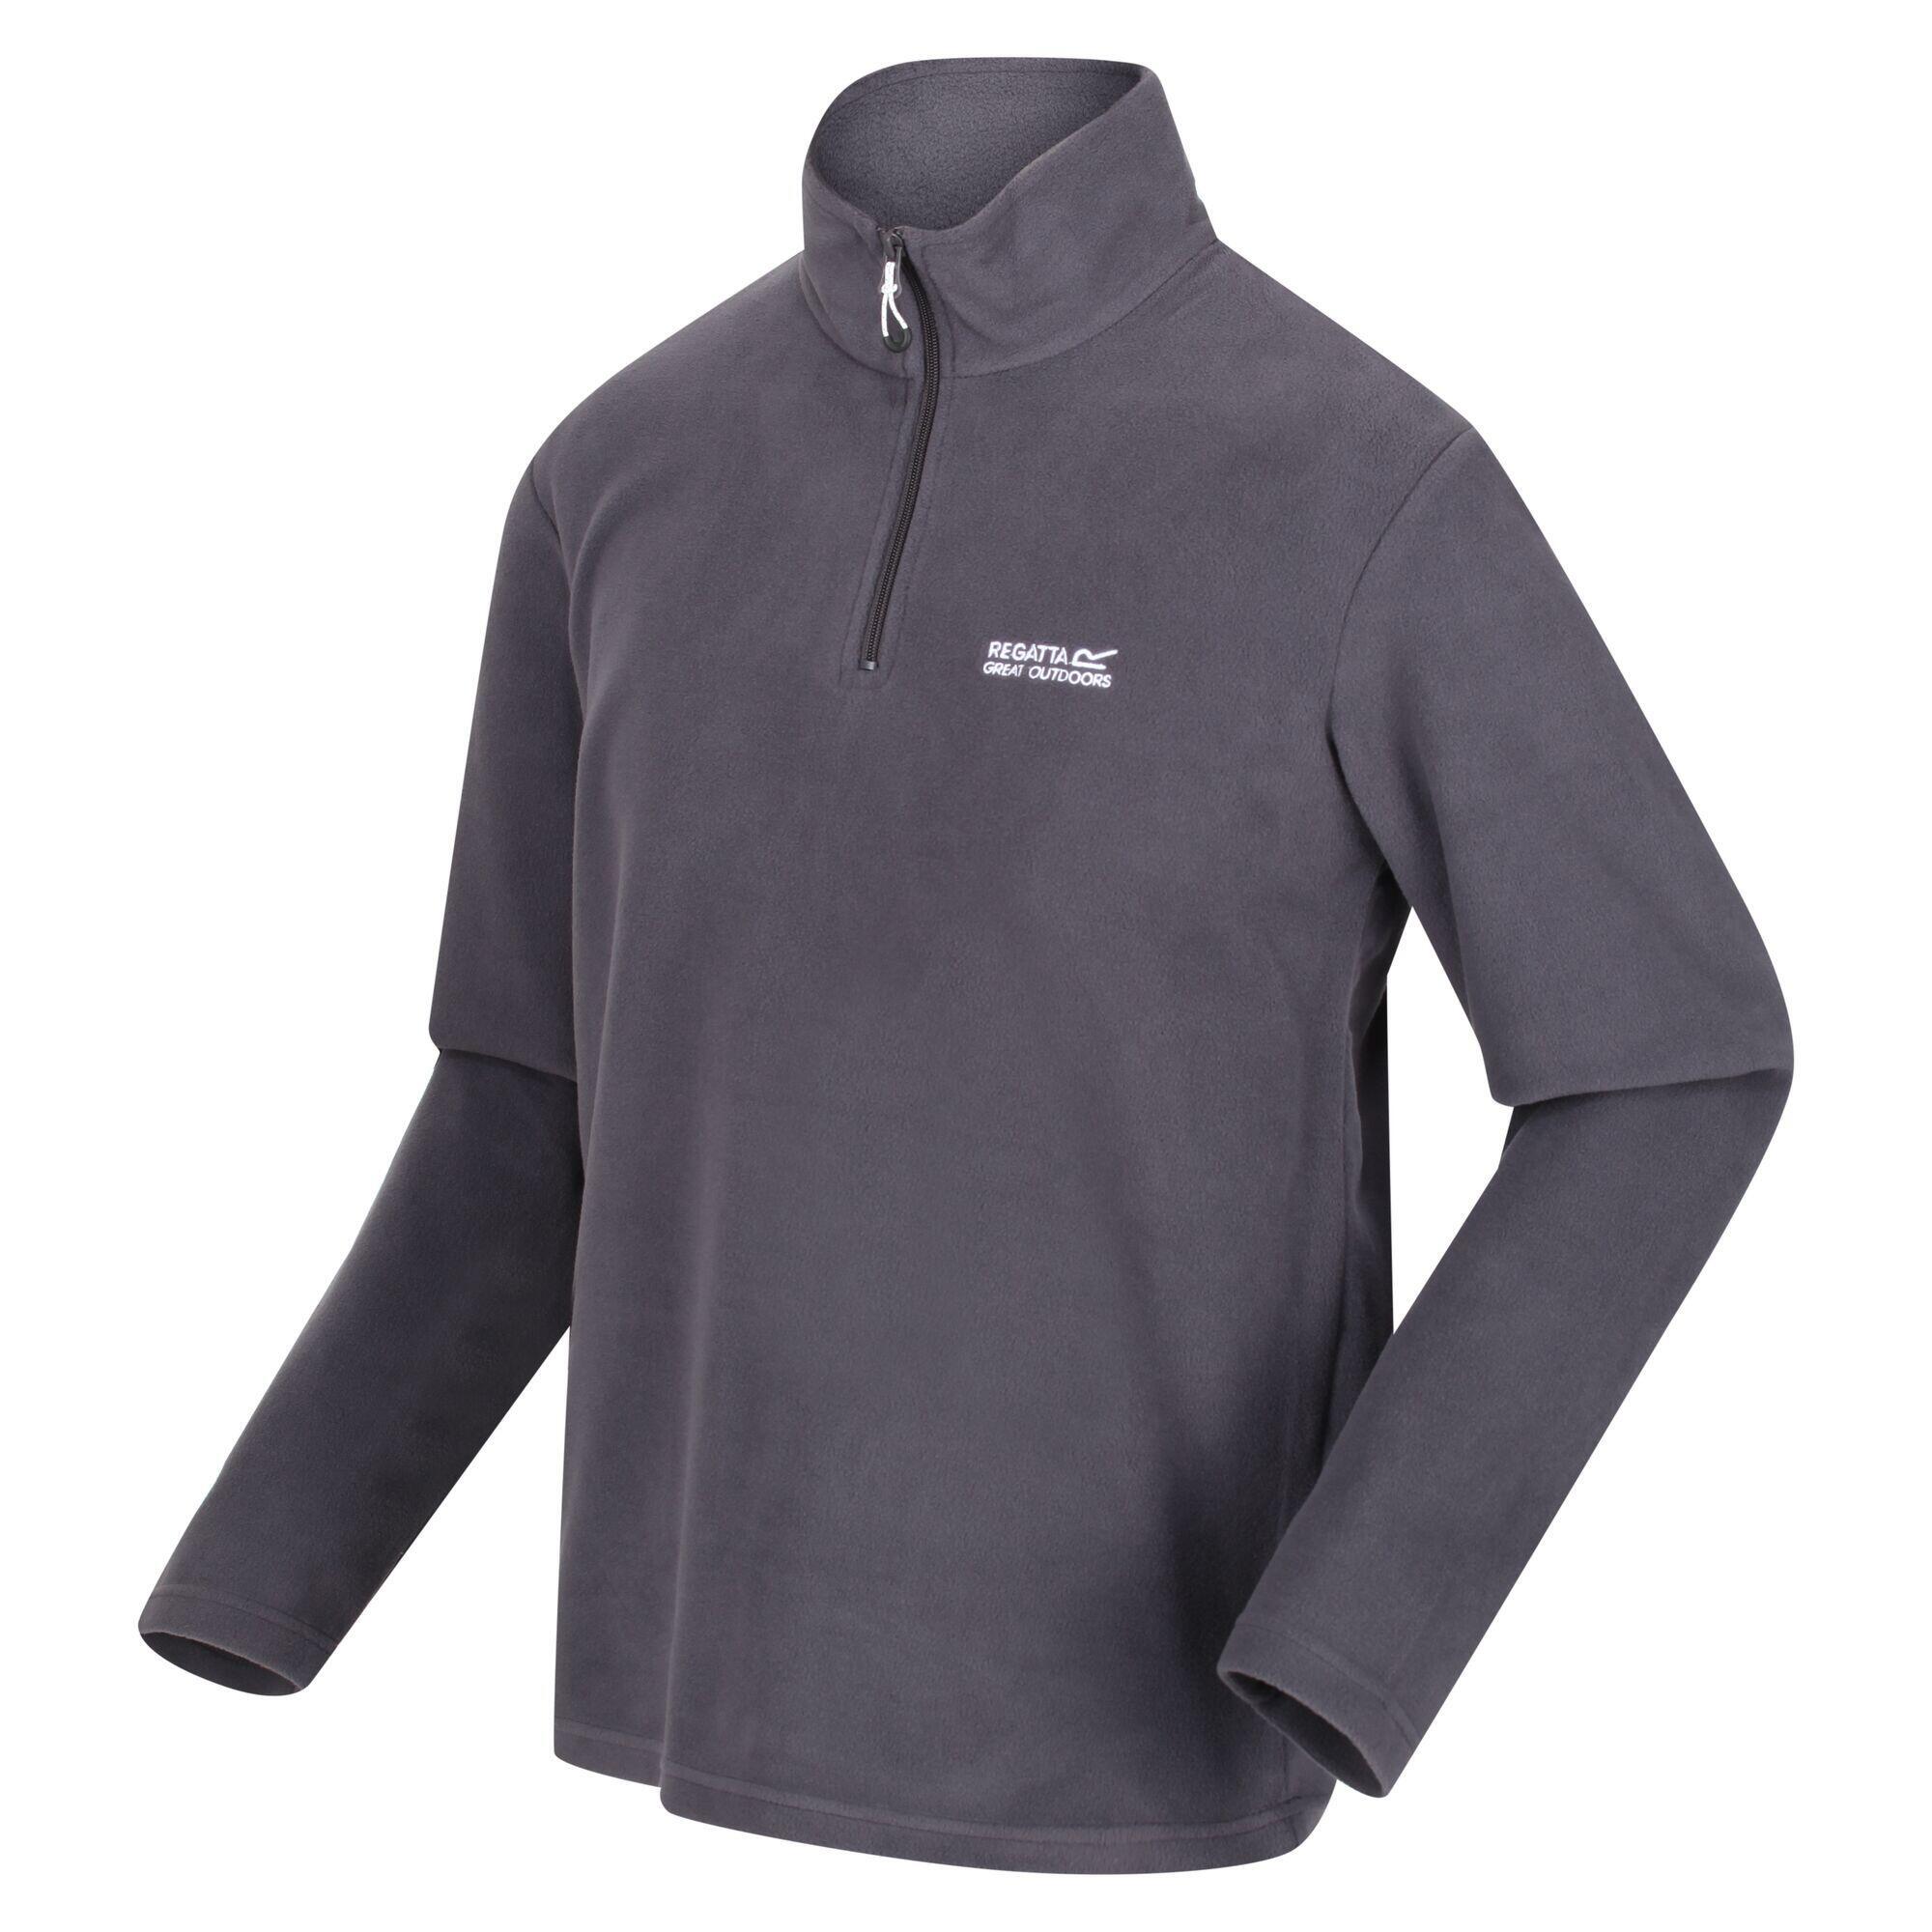 Куртка Regatta Thompson Hiking мужская флисовая, серый куртка флисовая мужская lancaster черная размер s